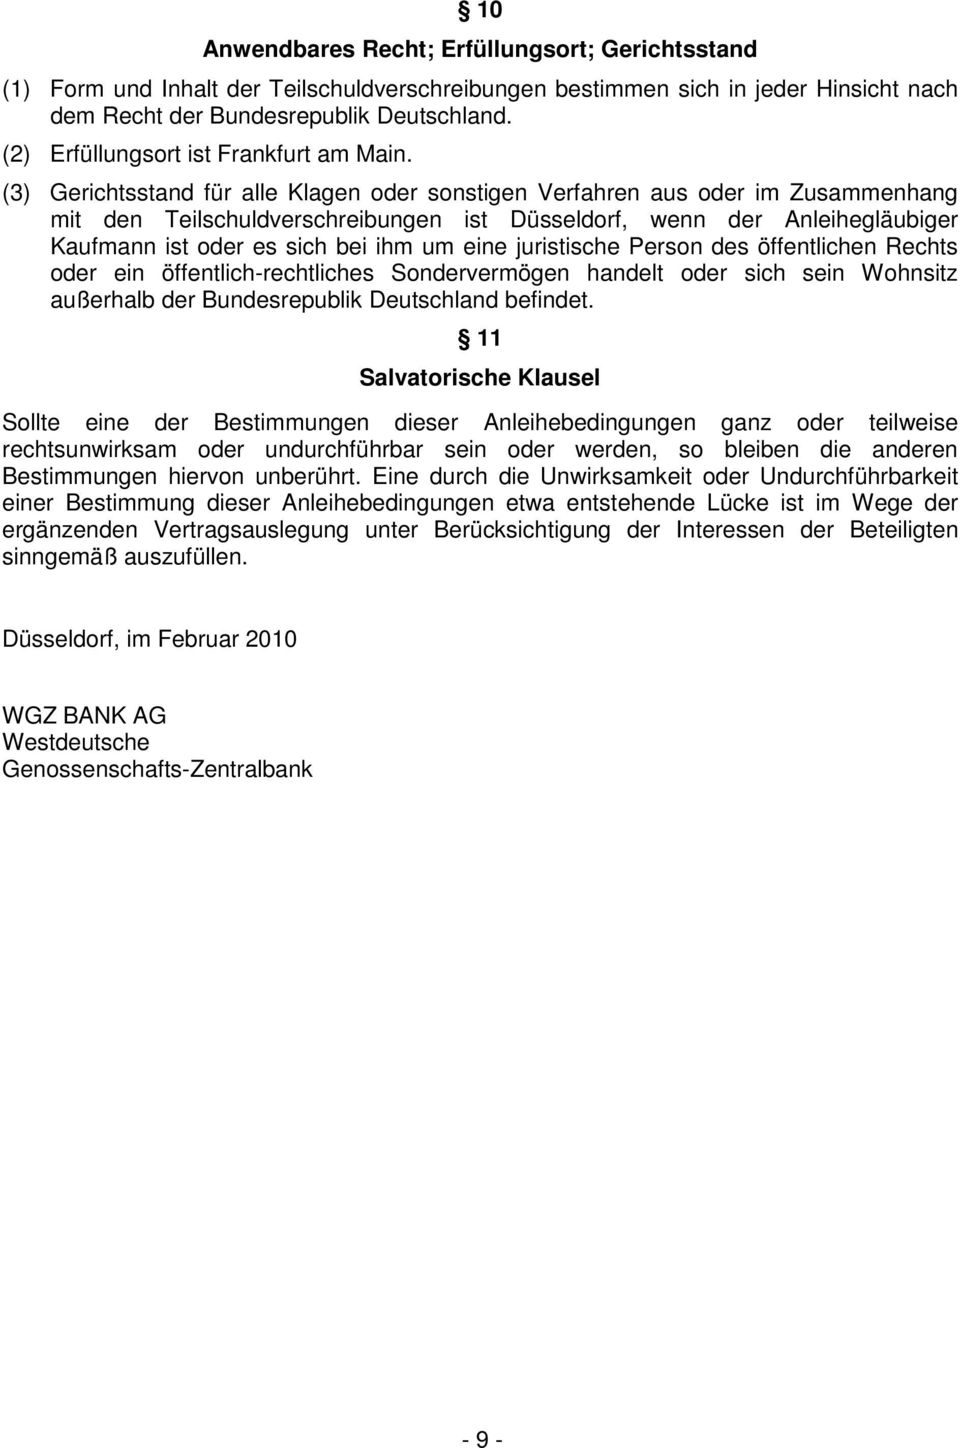 (3) Gerichtsstand für alle Klagen oder sonstigen Verfahren aus oder im Zusammenhang mit den Teilschuldverschreibungen ist Düsseldorf, wenn der Anleihegläubiger Kaufmann ist oder es sich bei ihm um